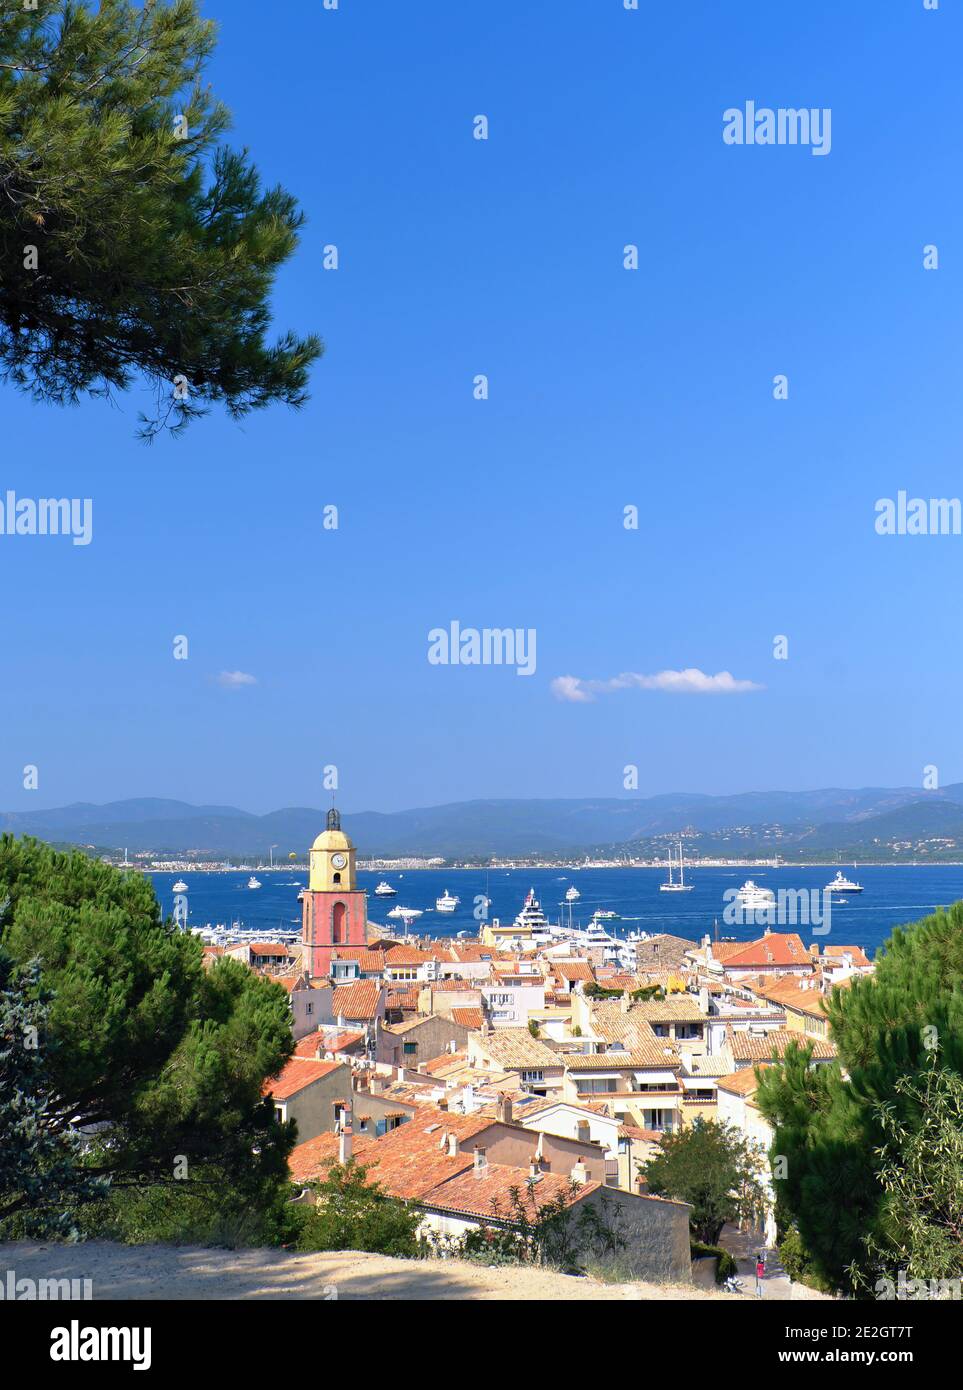 Saint-Tropez (Südostfrankreich): Überblick über die Altstadt mit dem Glockenturm der Kirche Notre-Dame de l'Assomption (Unsere Liebe Frau vom Assumpt Stockfoto